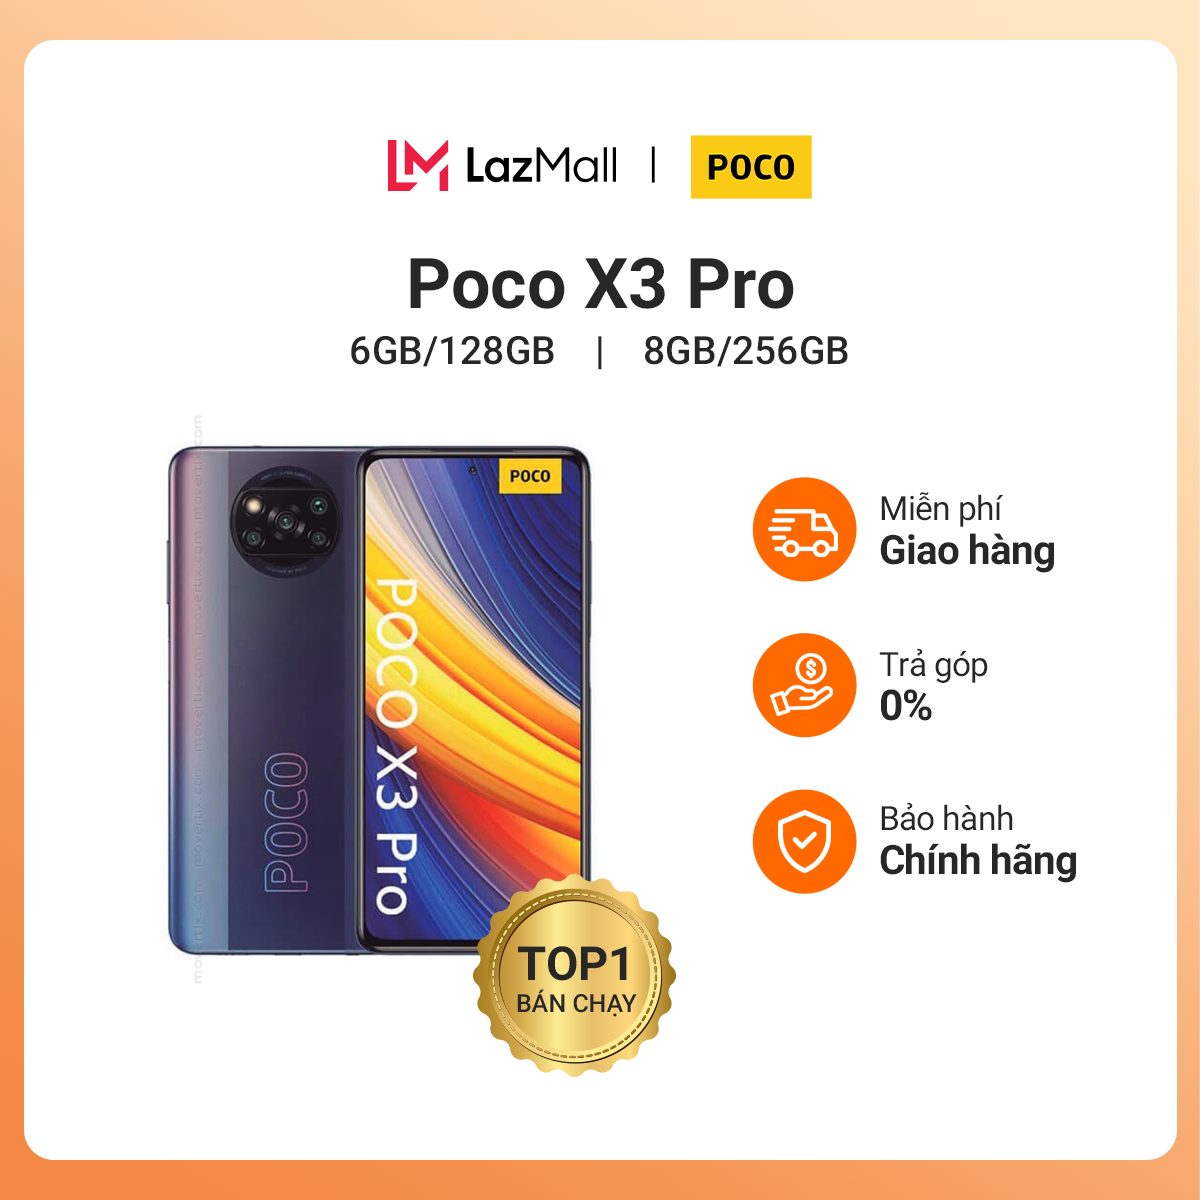 [Lì xì 500k] Điện thoại POCO X3 Pro (6GB/128GB 8GB/256GB) - Hàng chính hãng DGW - Bảo hành 18 tháng...